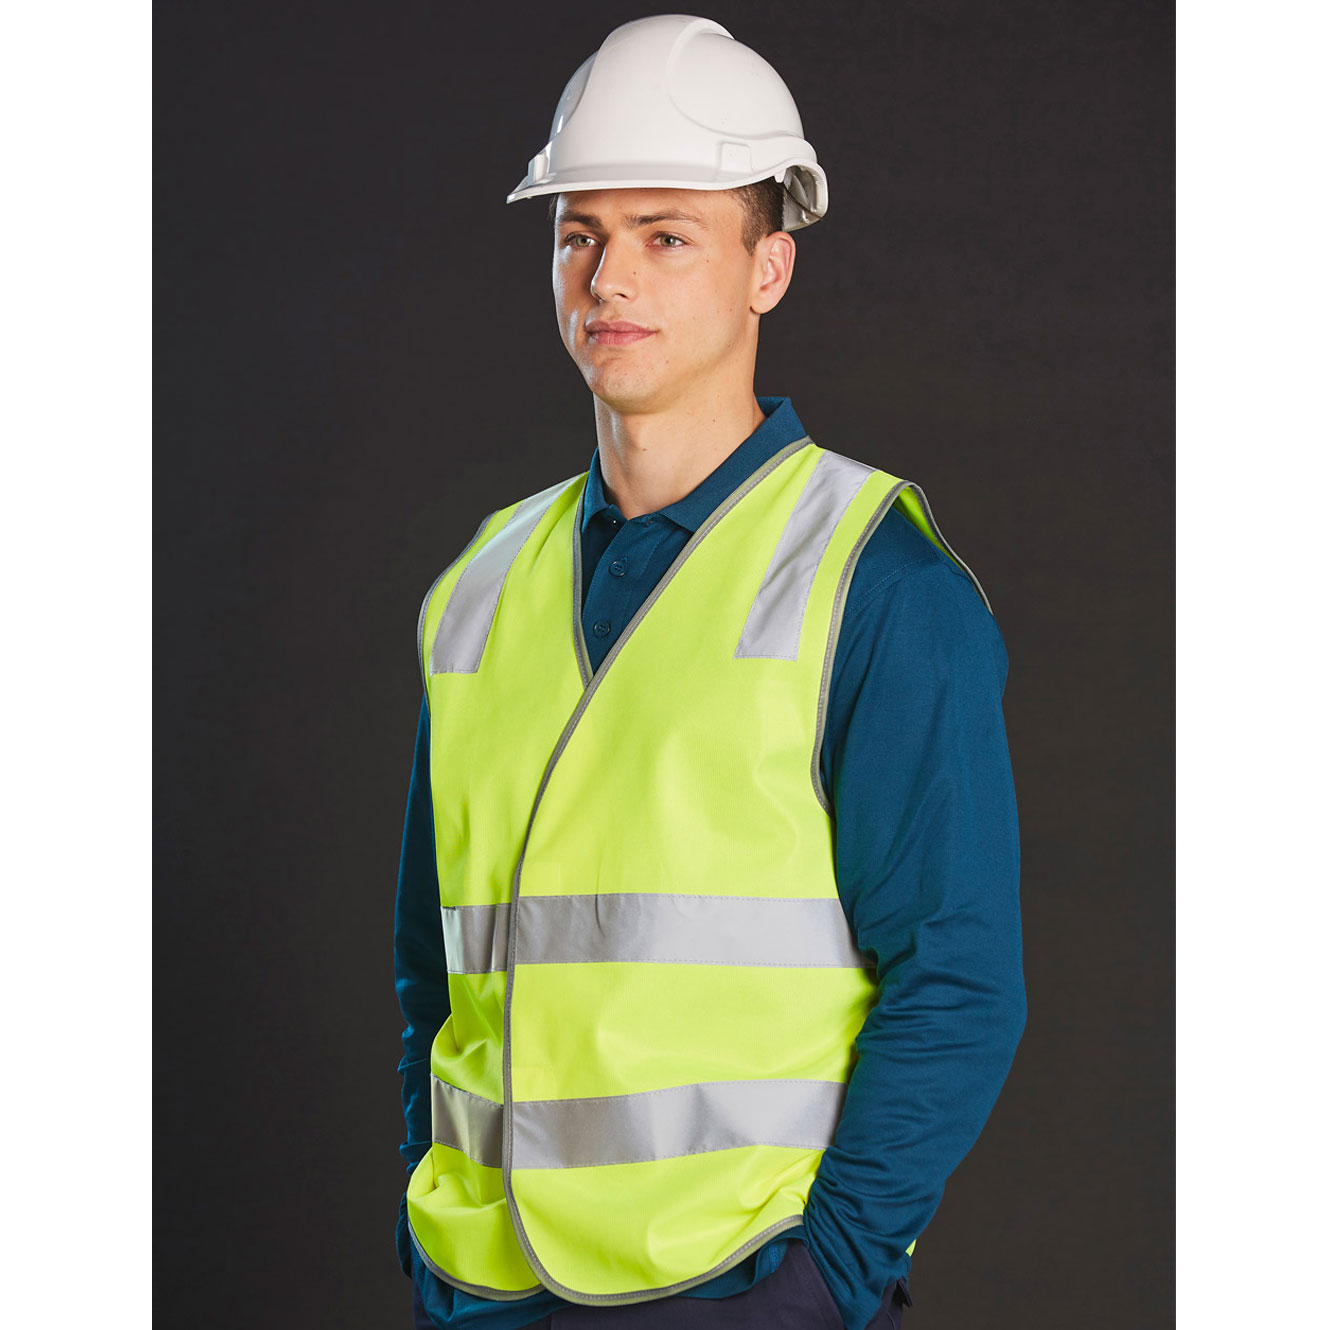 Safety Vest With Shoulder Tapes - Big Banner Australia